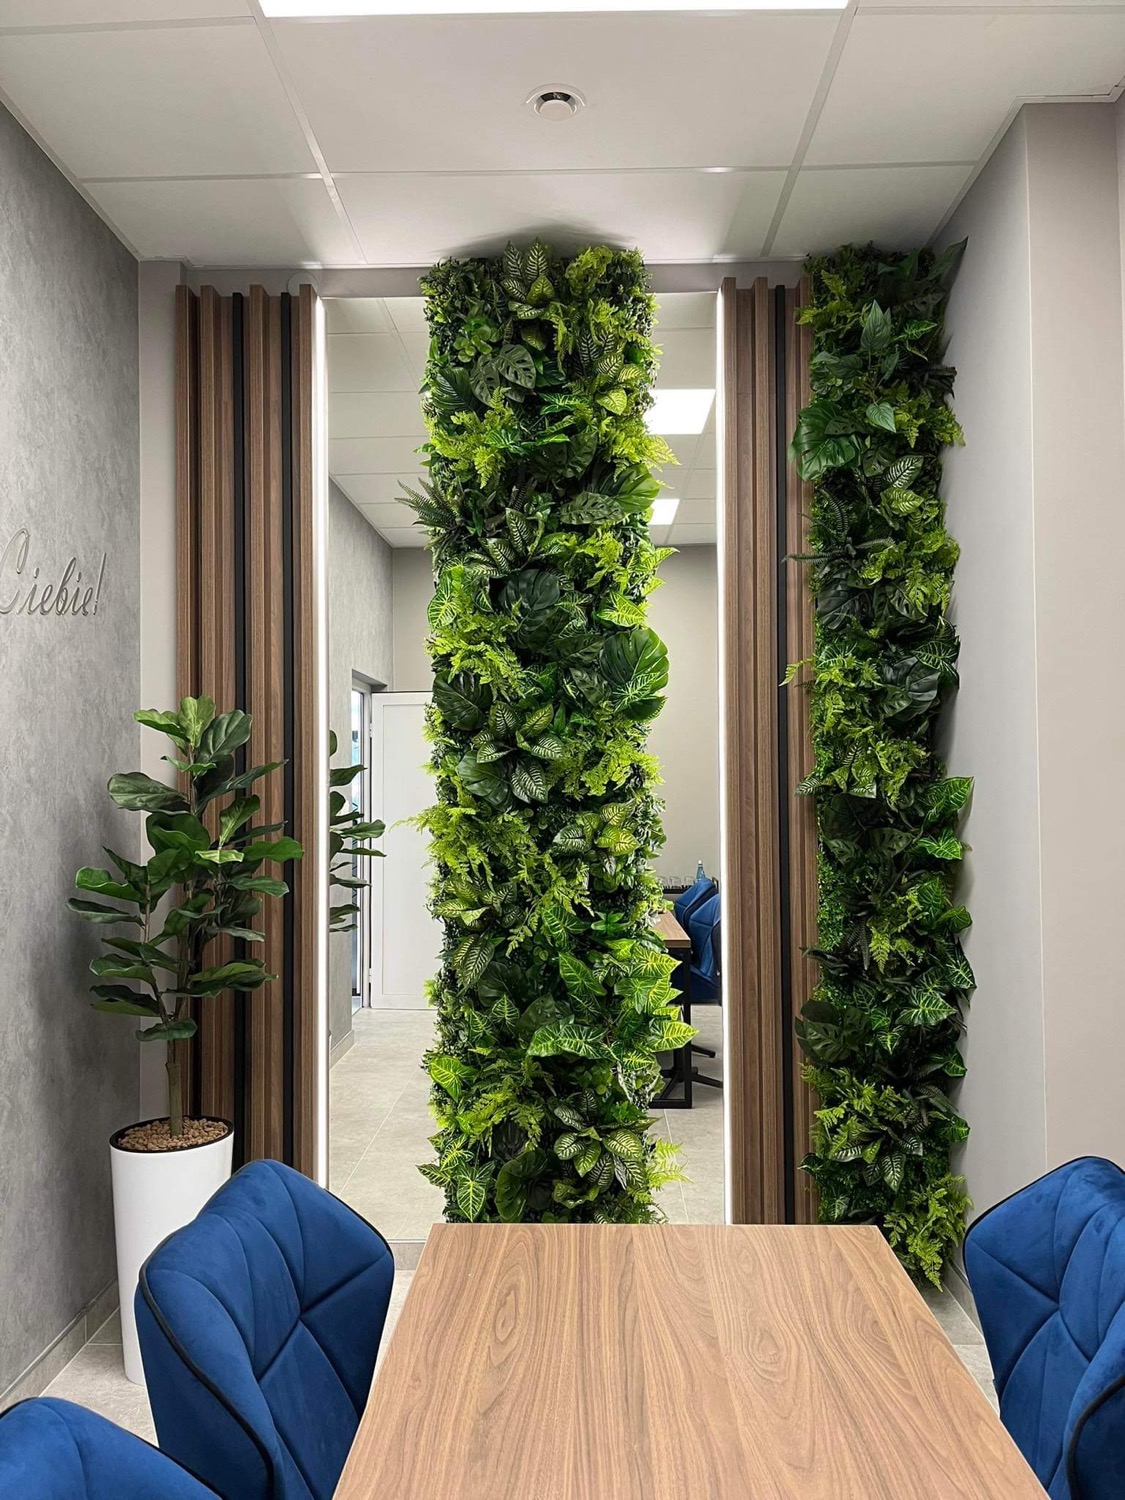 Zielona ściana ozdobiona sztucznymi roślinami w biurze z niebieskimi krzesłami.